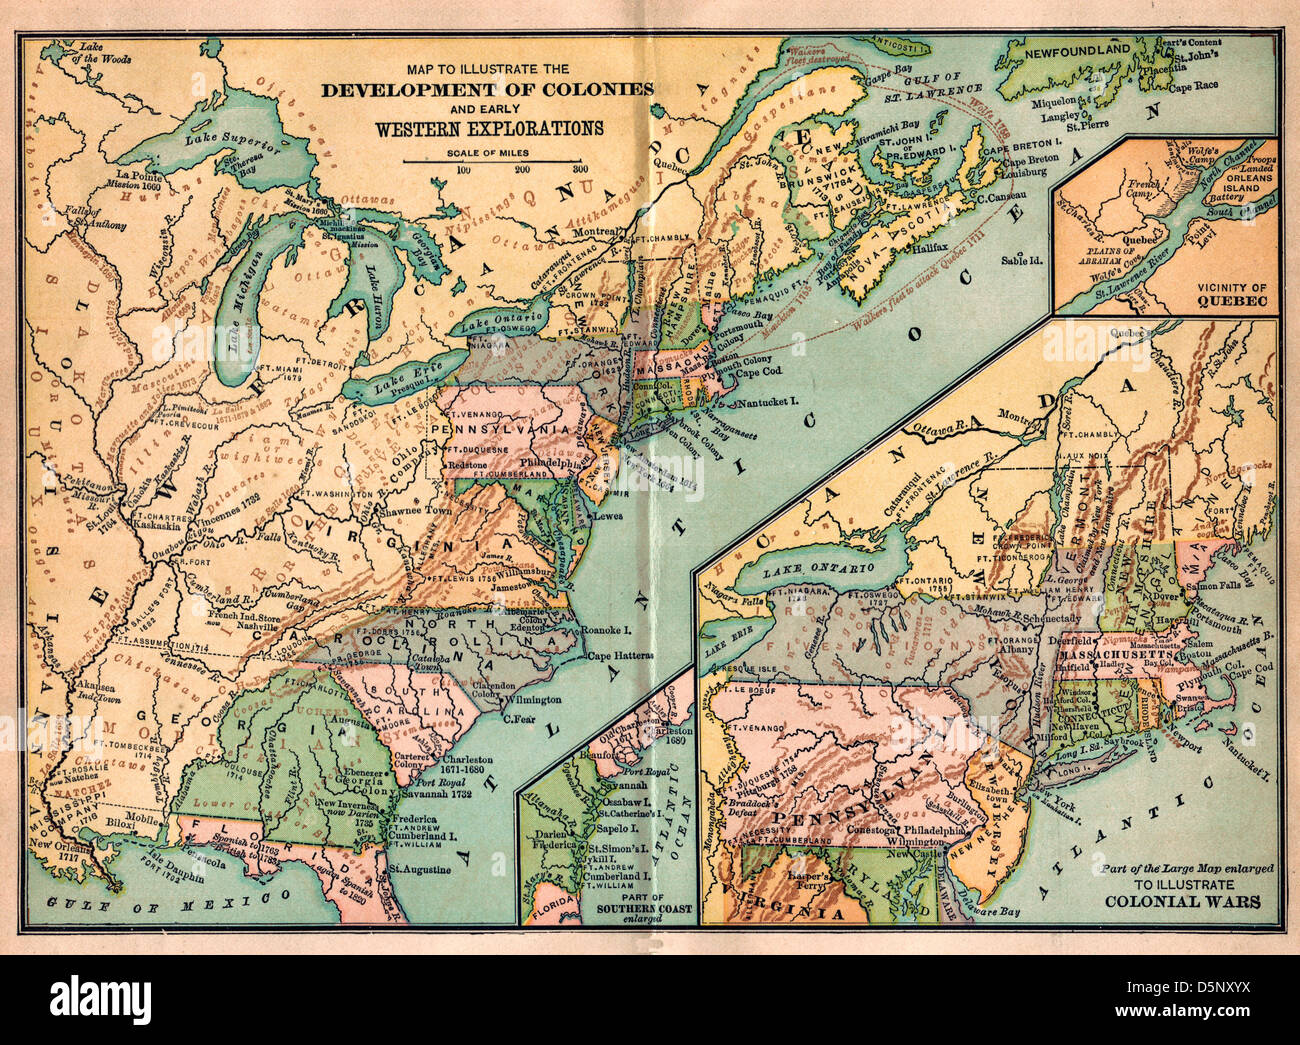 Vintage Karte der Vereinigten Staaten Amerika - Entwicklung der Kolonien und Western Exploration und Kolonialkriege Stockfoto